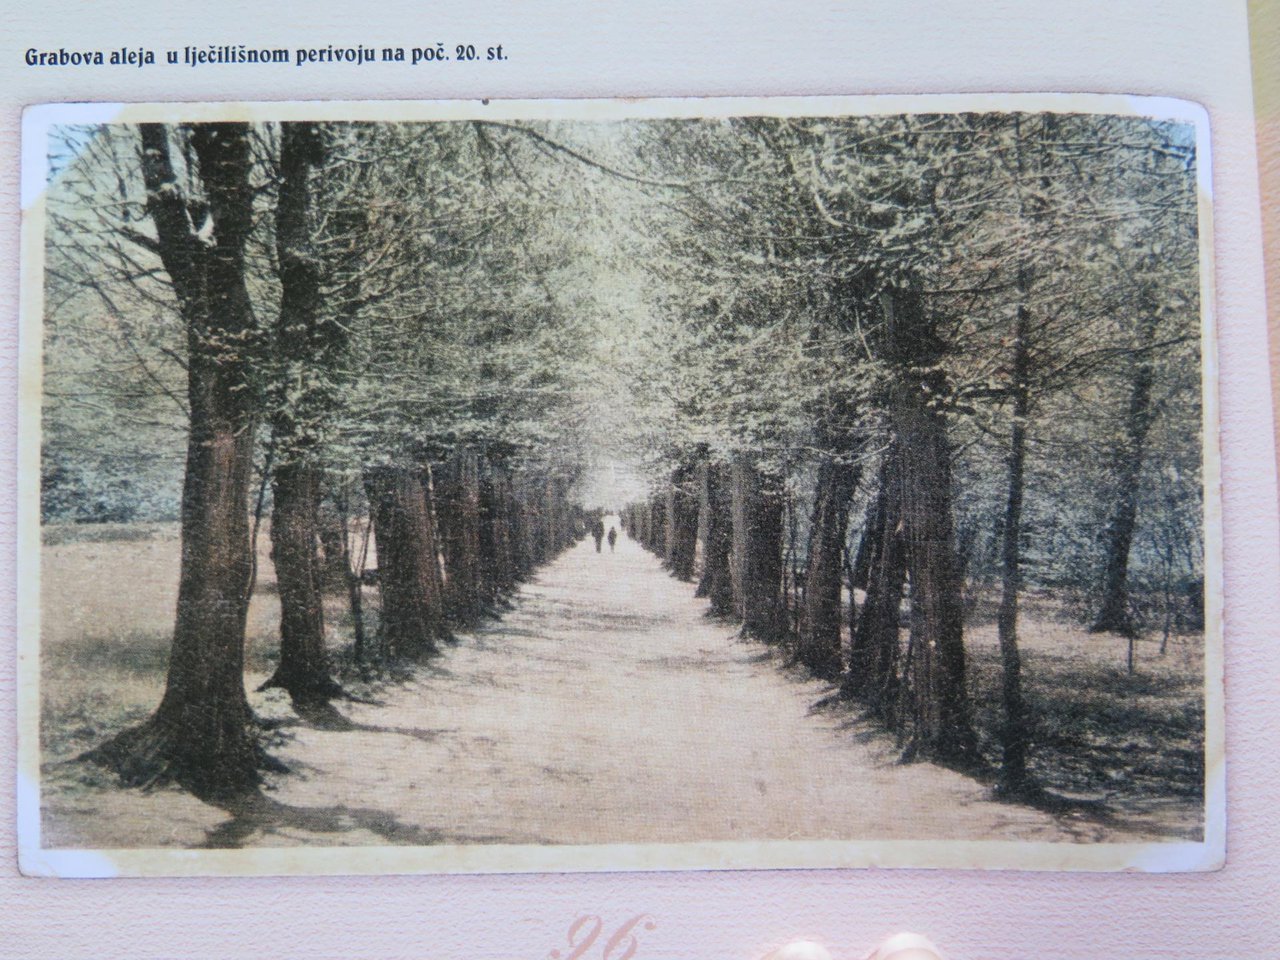 Fotografija: Grabova aleja prije sto godina – zasjenjeni put između tabli livada/Foto: Arhiv Vlatke Daněk